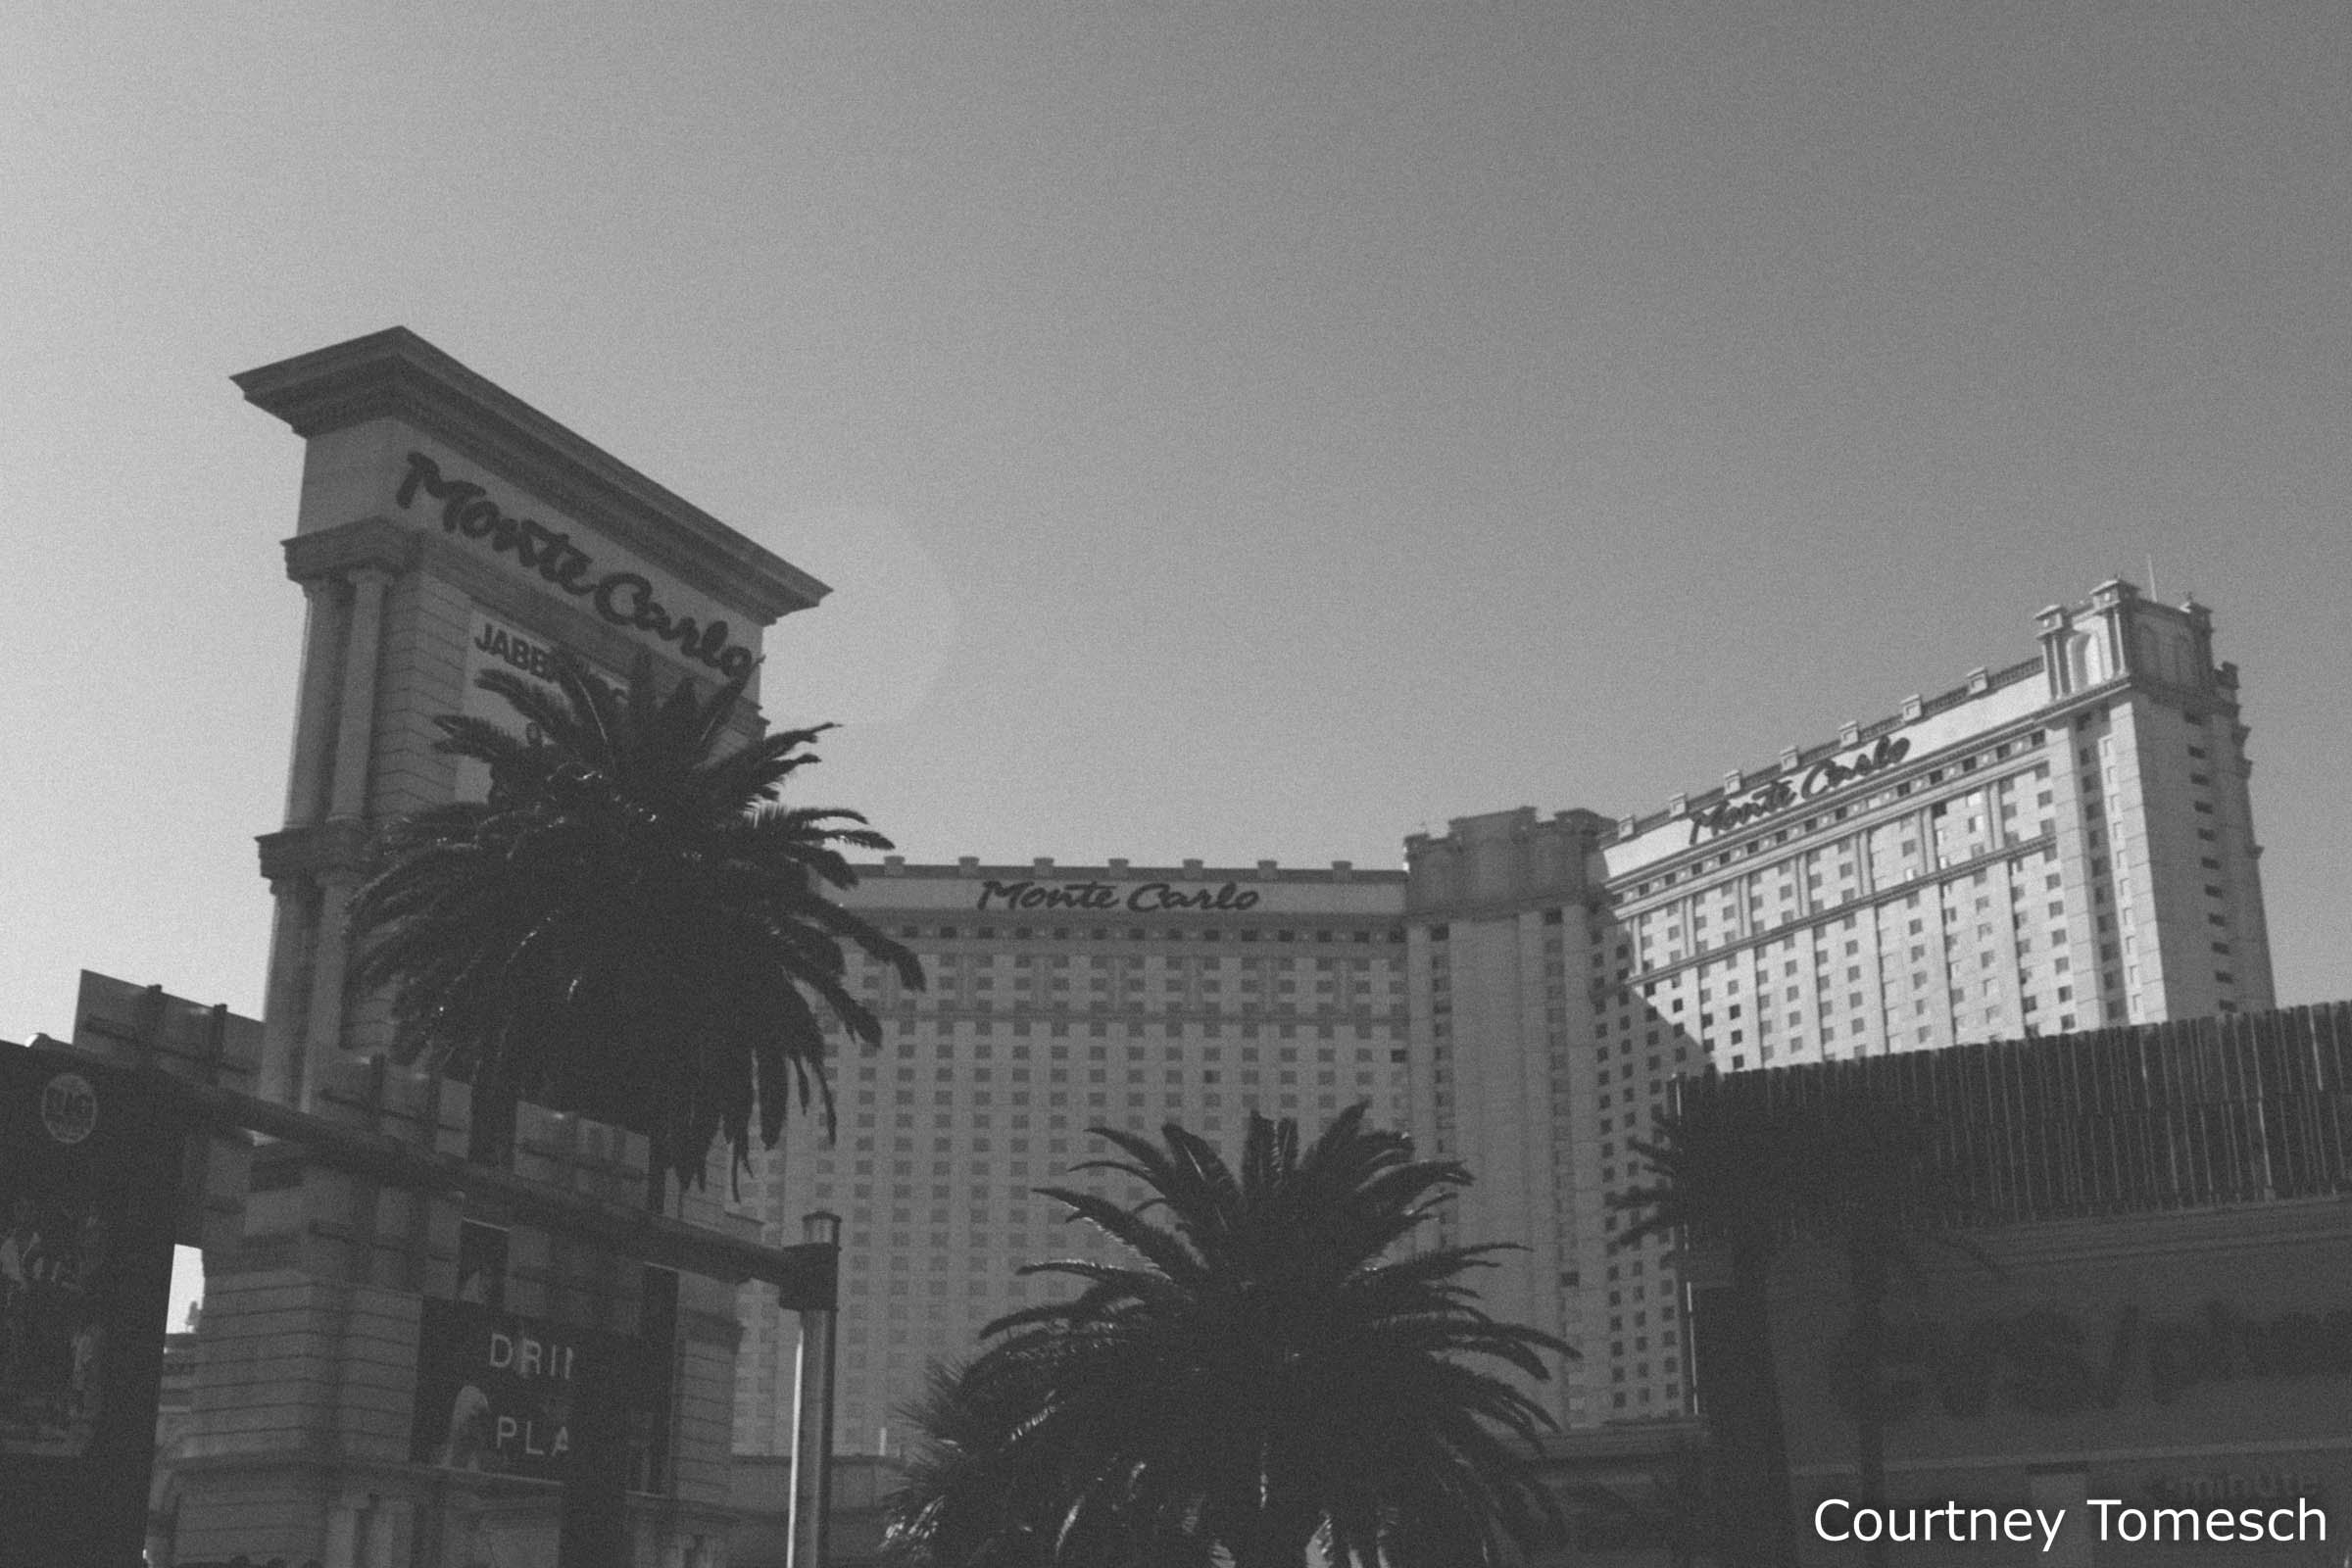 Monte Carlo Hotel and Casino